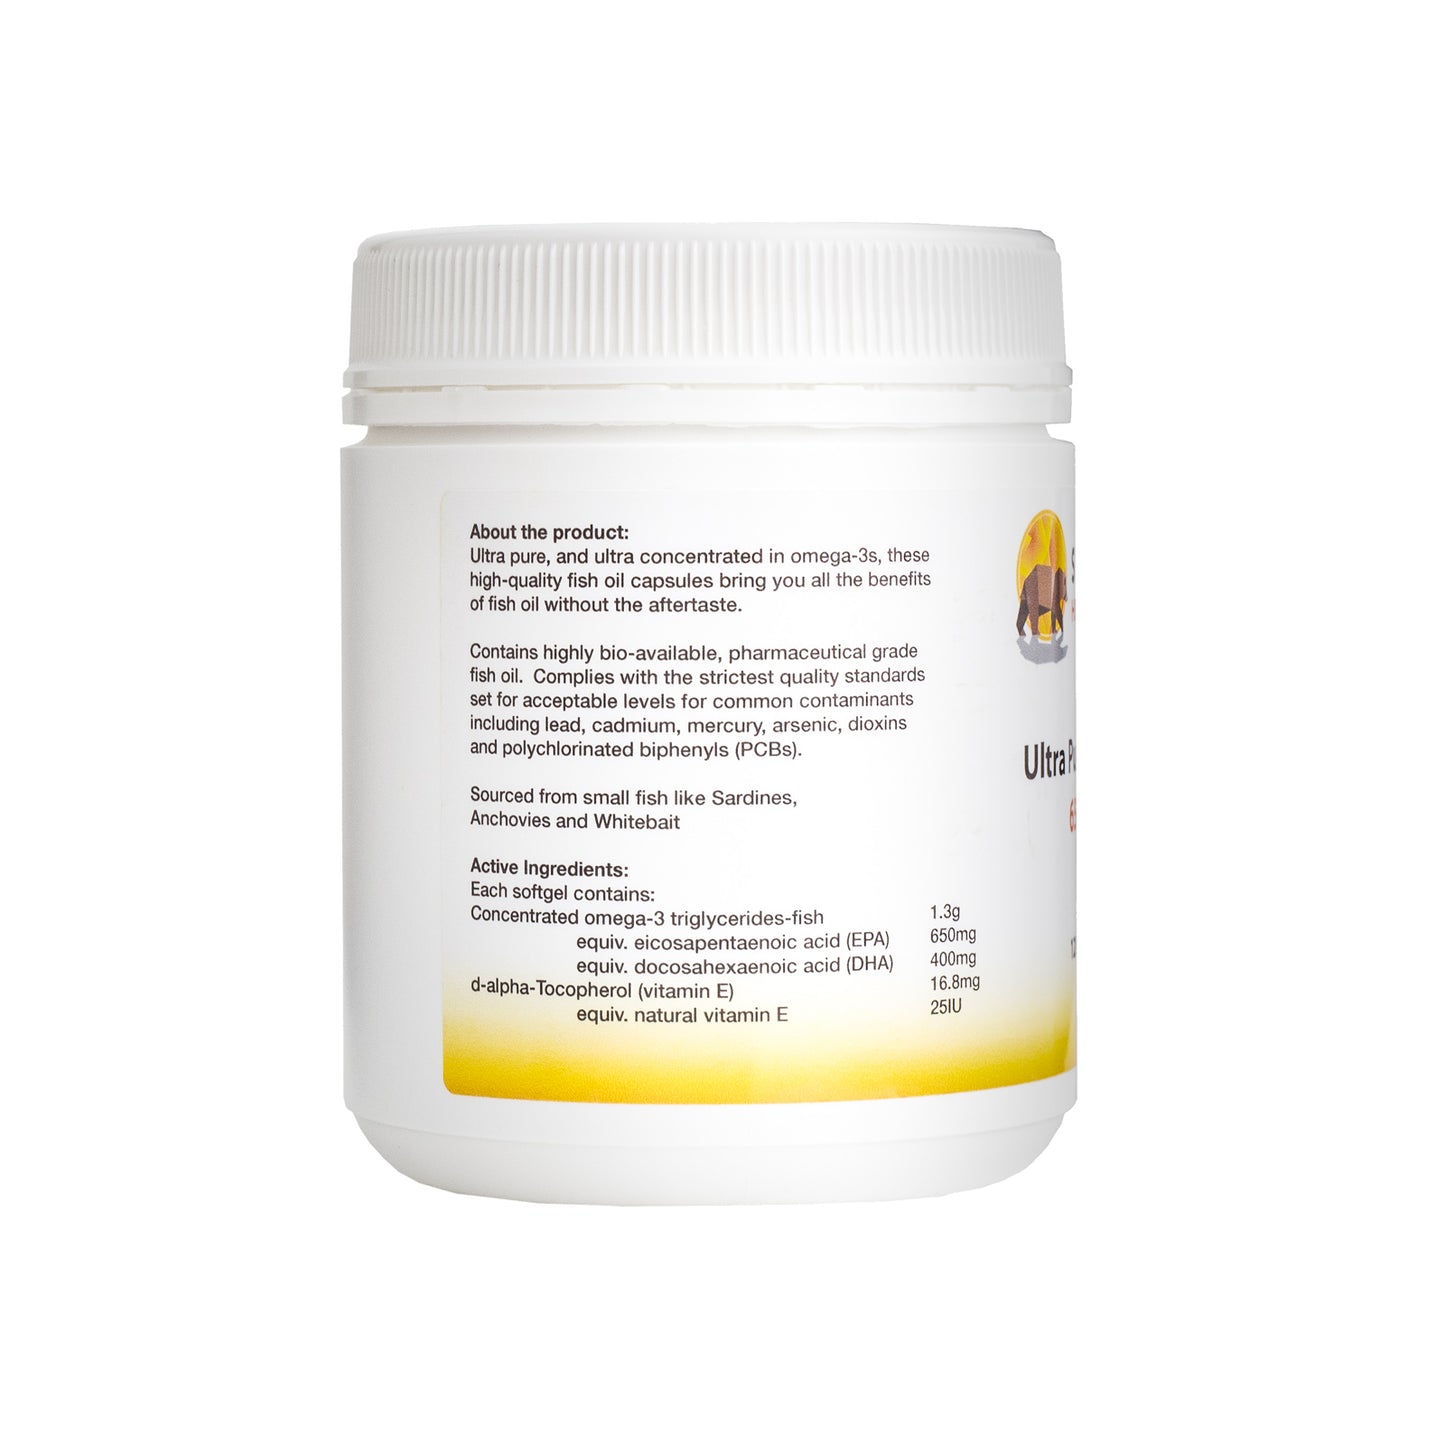 Ultra Pure EPA/DHA 650/400 - Fish Oil - 120 Gels -Sunbear Health Supplies